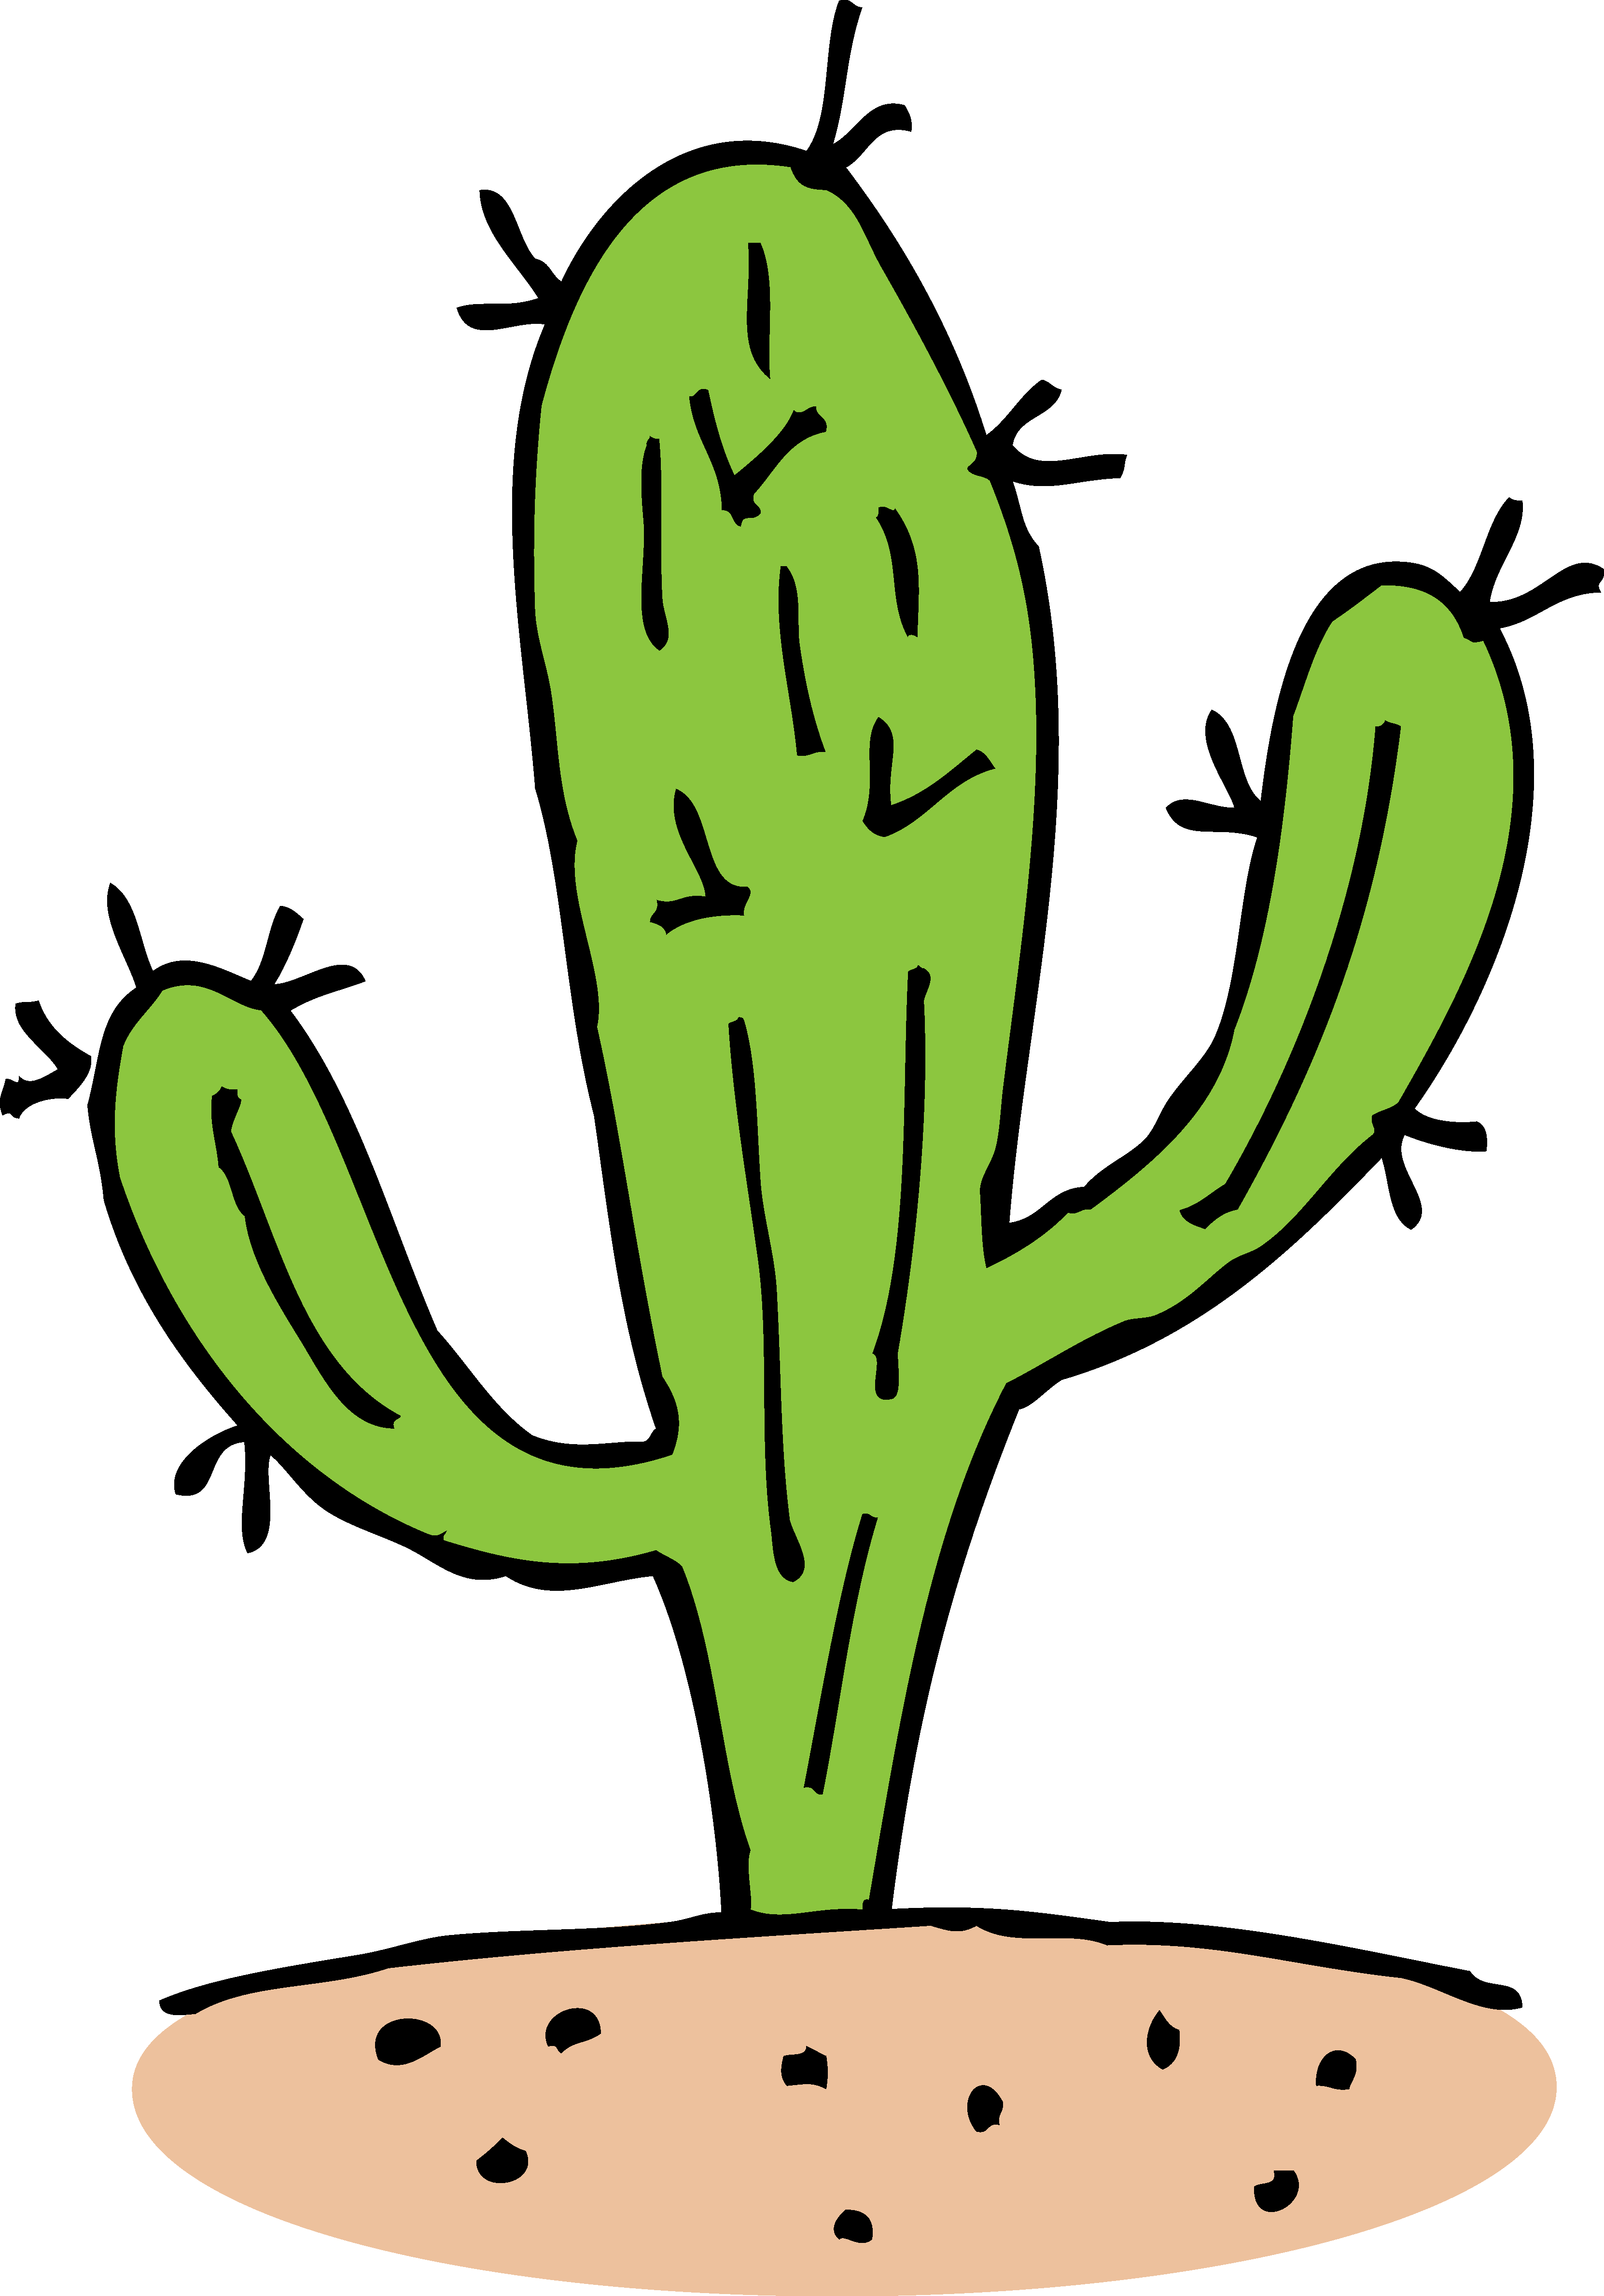 Cartoon Cactus